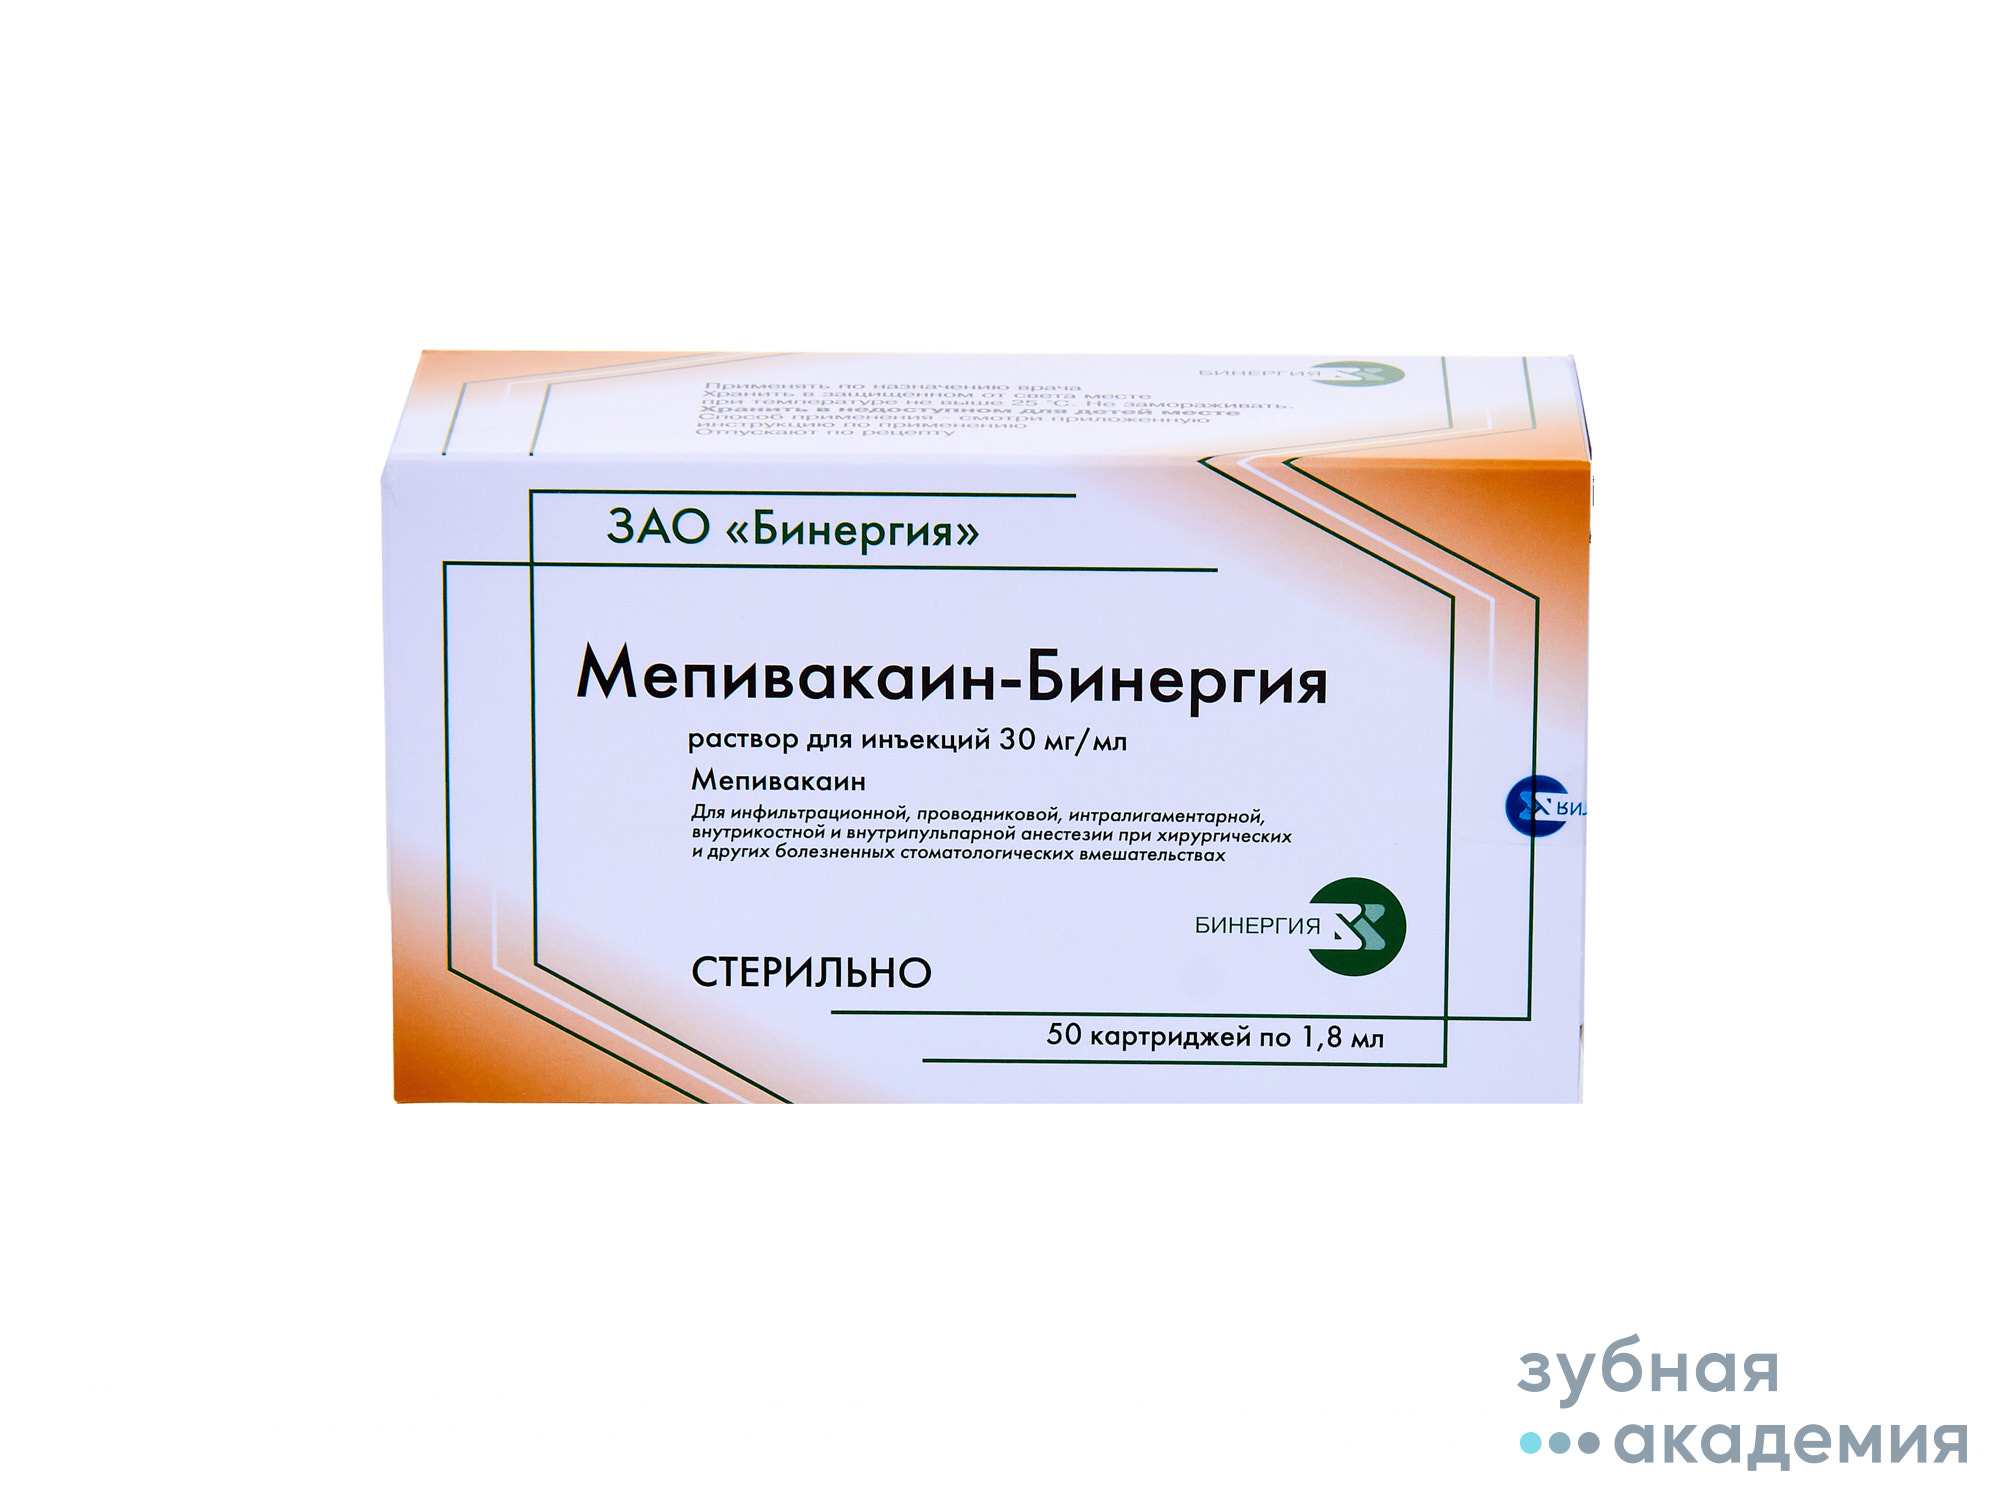 Мепивакаин 30 мг/мл упаковка 50 карпул*1,8 мл./ФКП Армавирская биофабрика/Россия